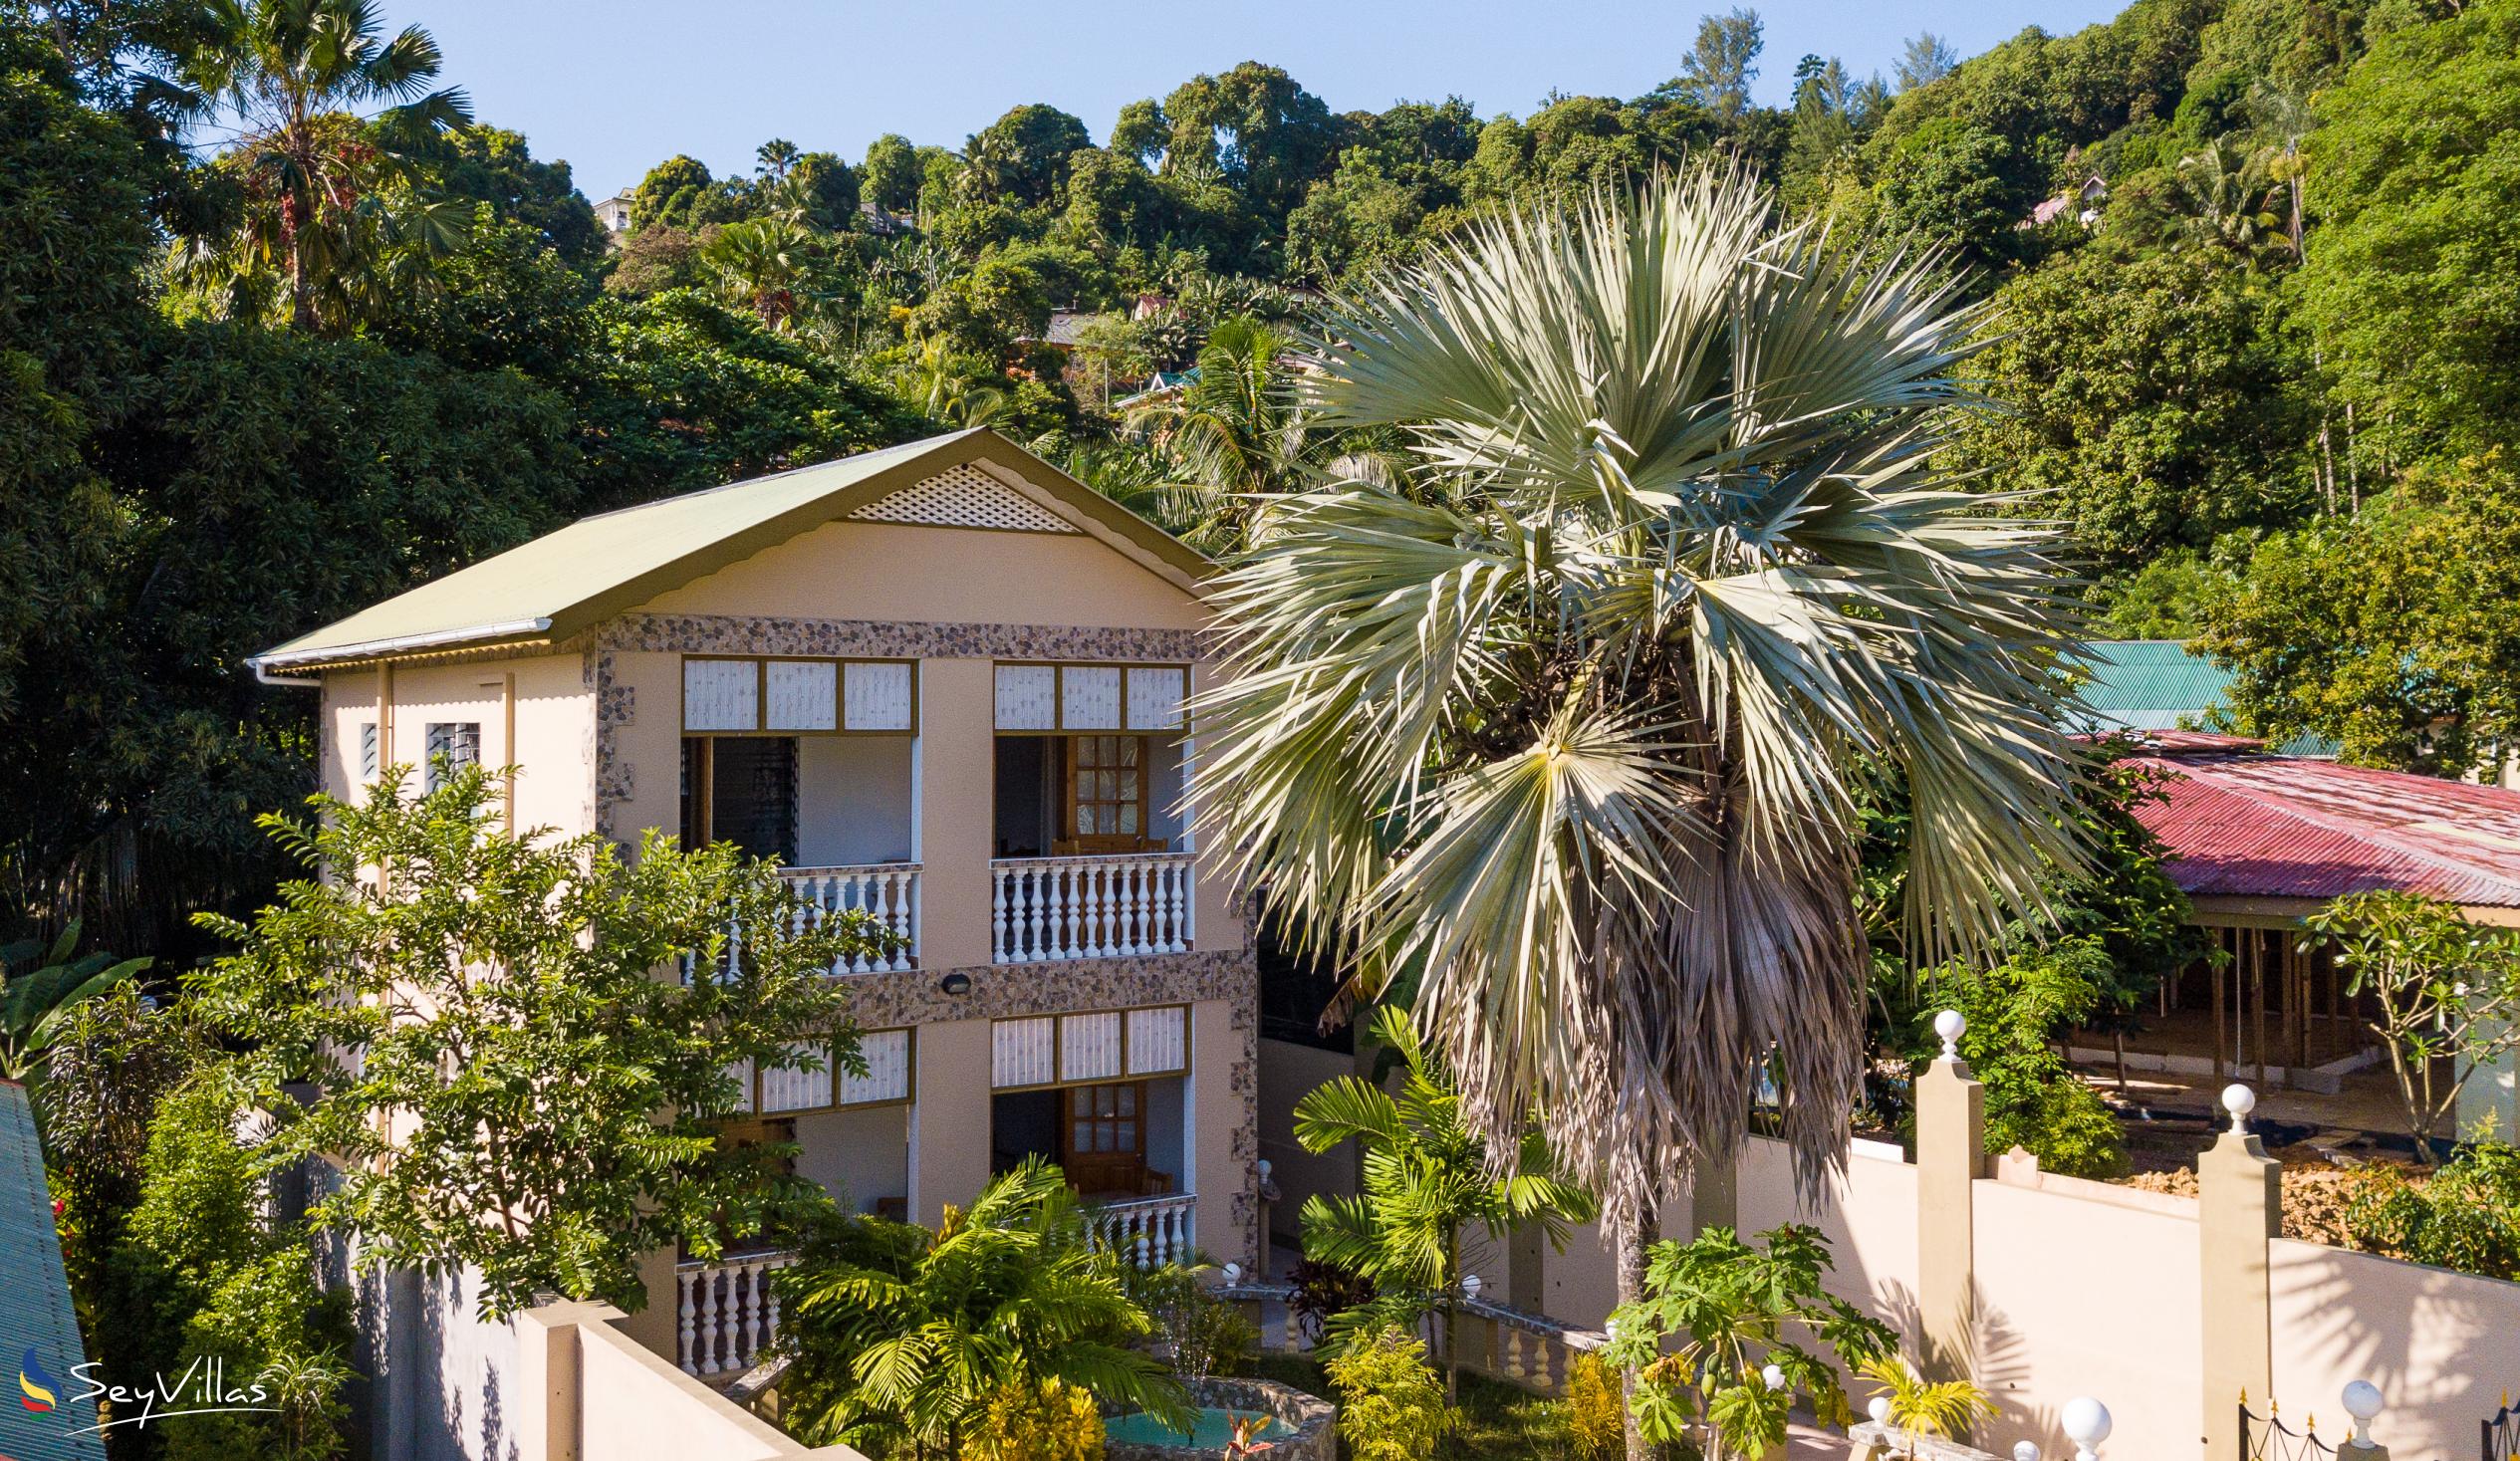 Foto 2: La Residence d'Almee - Aussenbereich - Praslin (Seychellen)